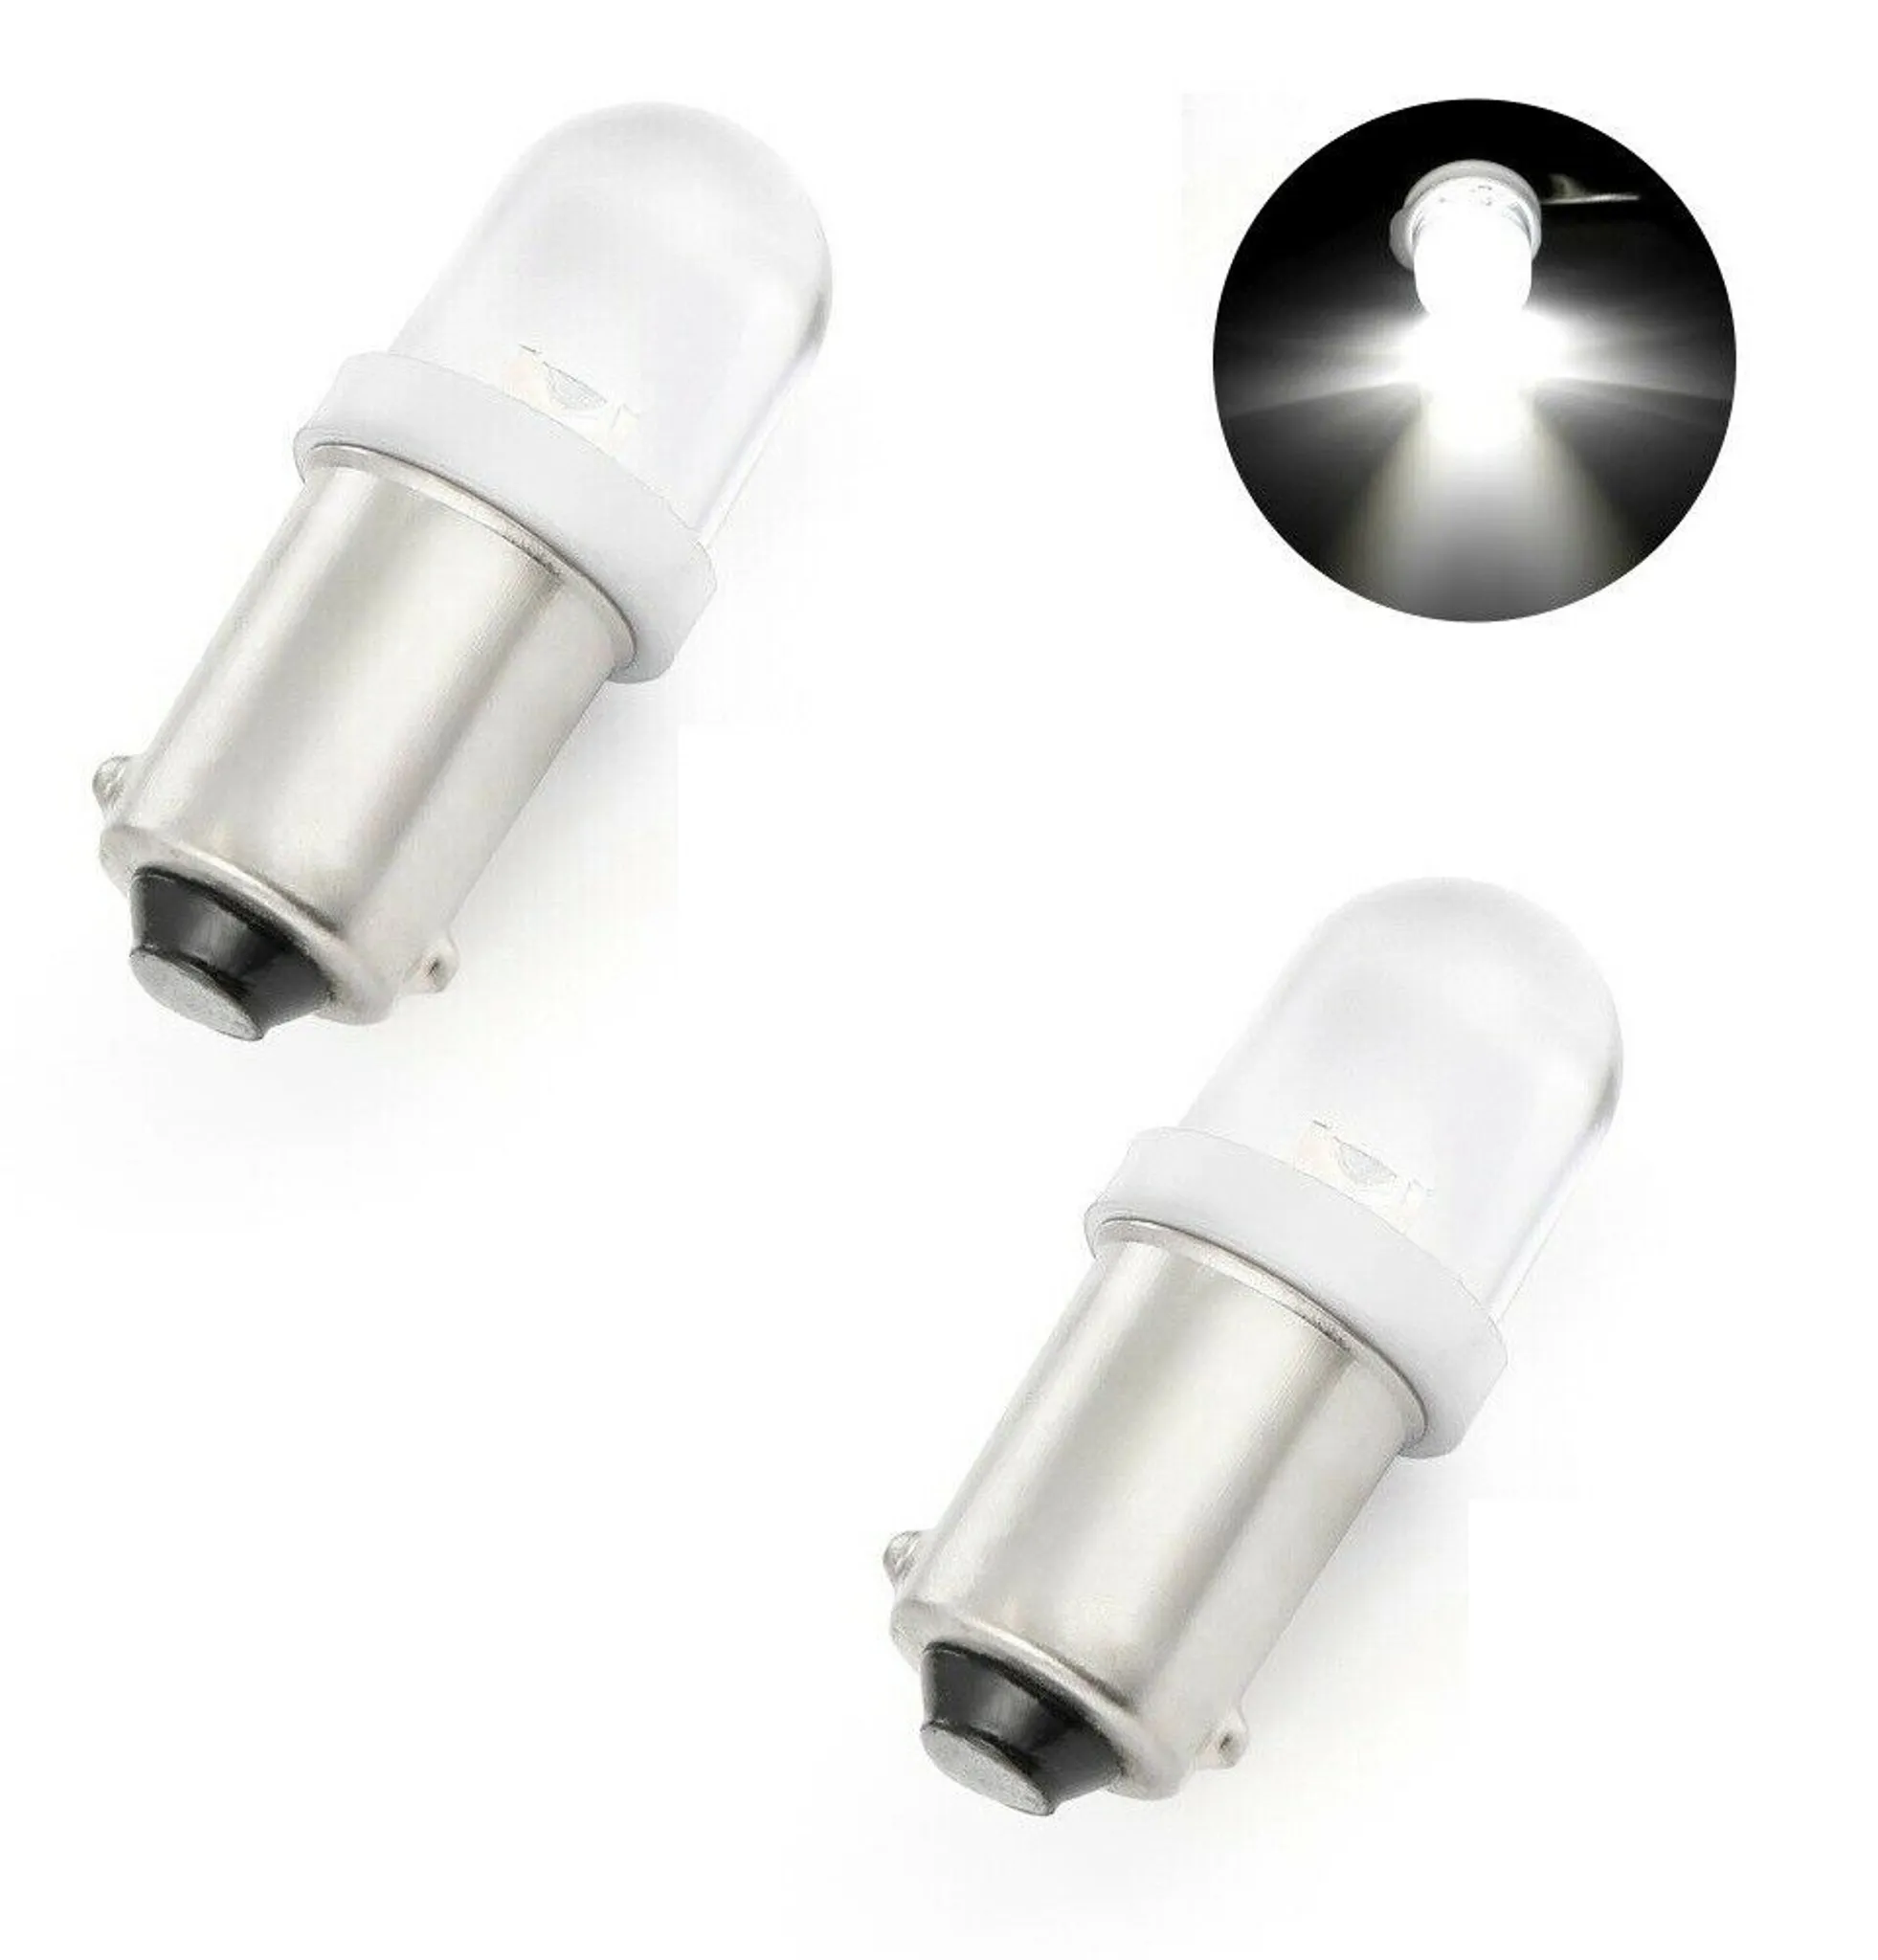 Standlicht Metallsockel Glühbirne Glühlampe 12V 4W Ba9s Bulb